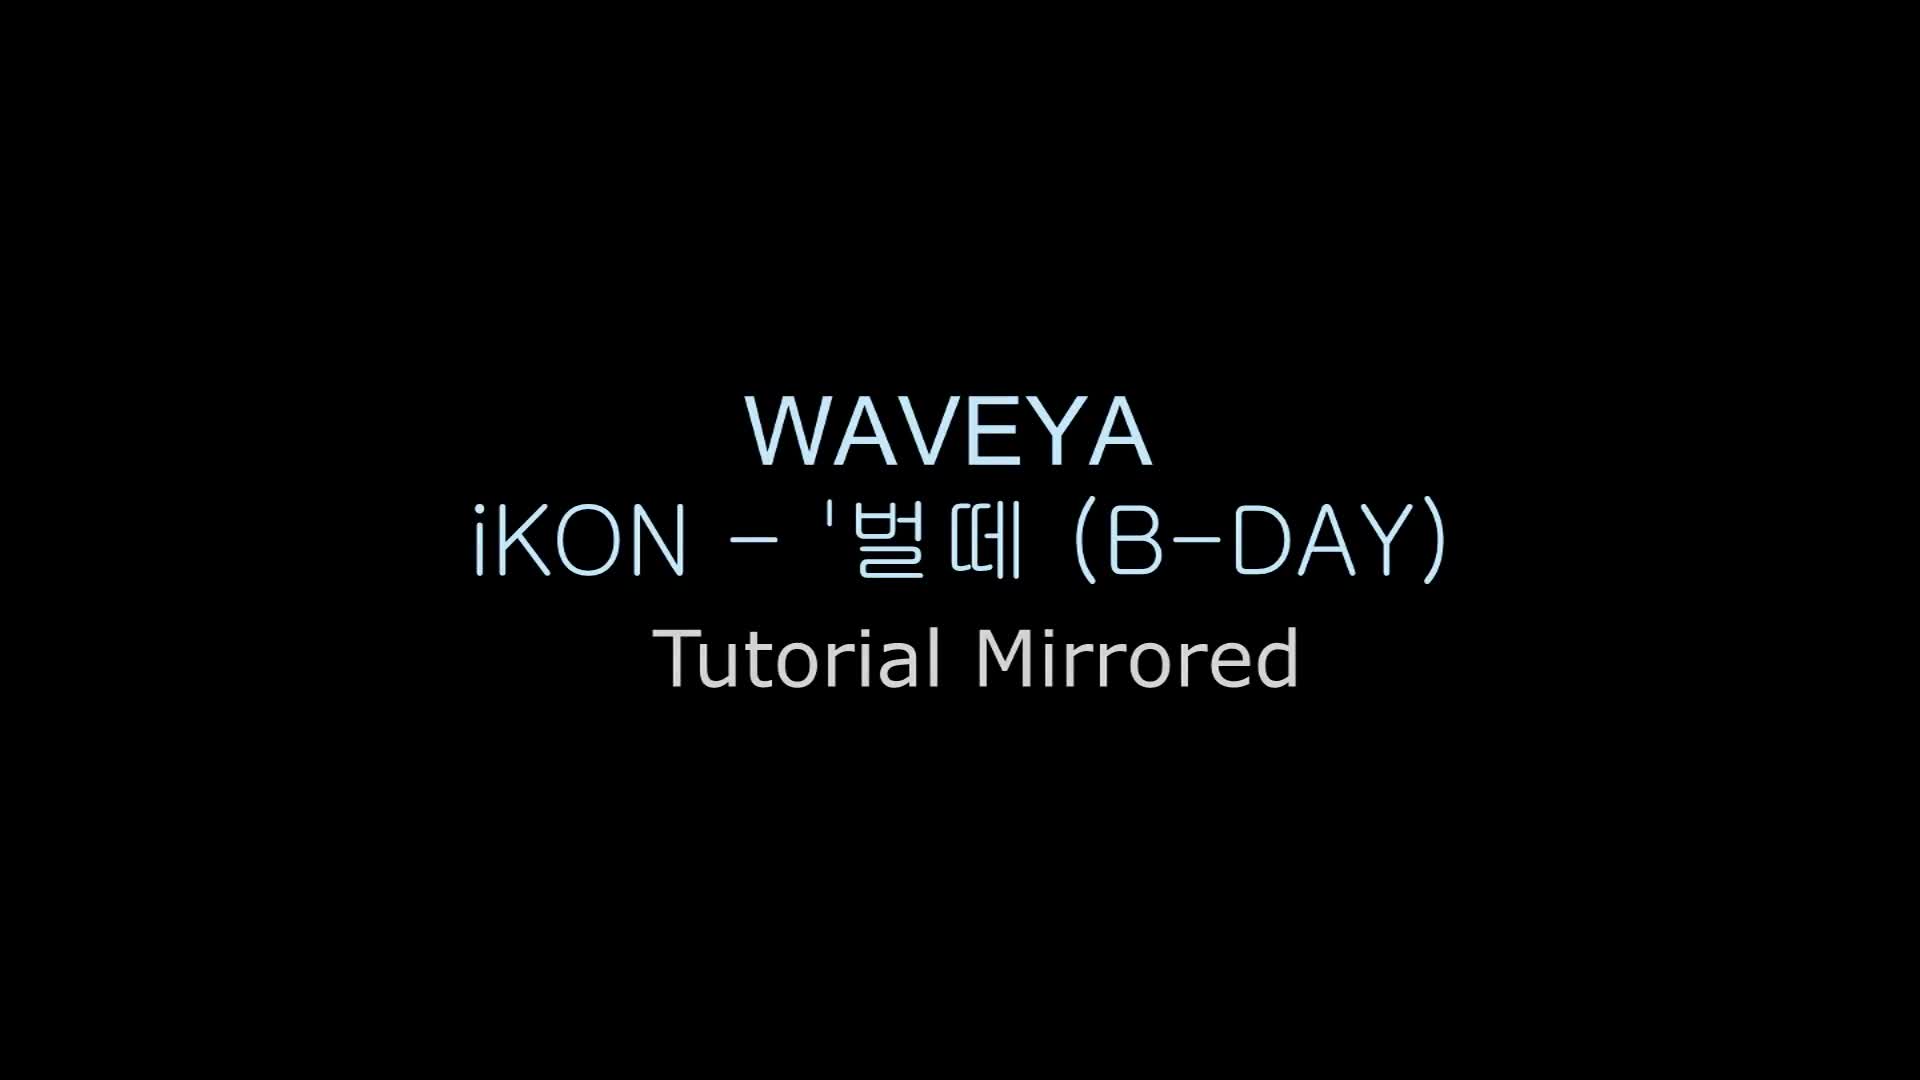 iKON 아이콘 벌떼 안무 거울모드 느리게 설명강좌 Waveya (B-DAY) mirrored tutorial